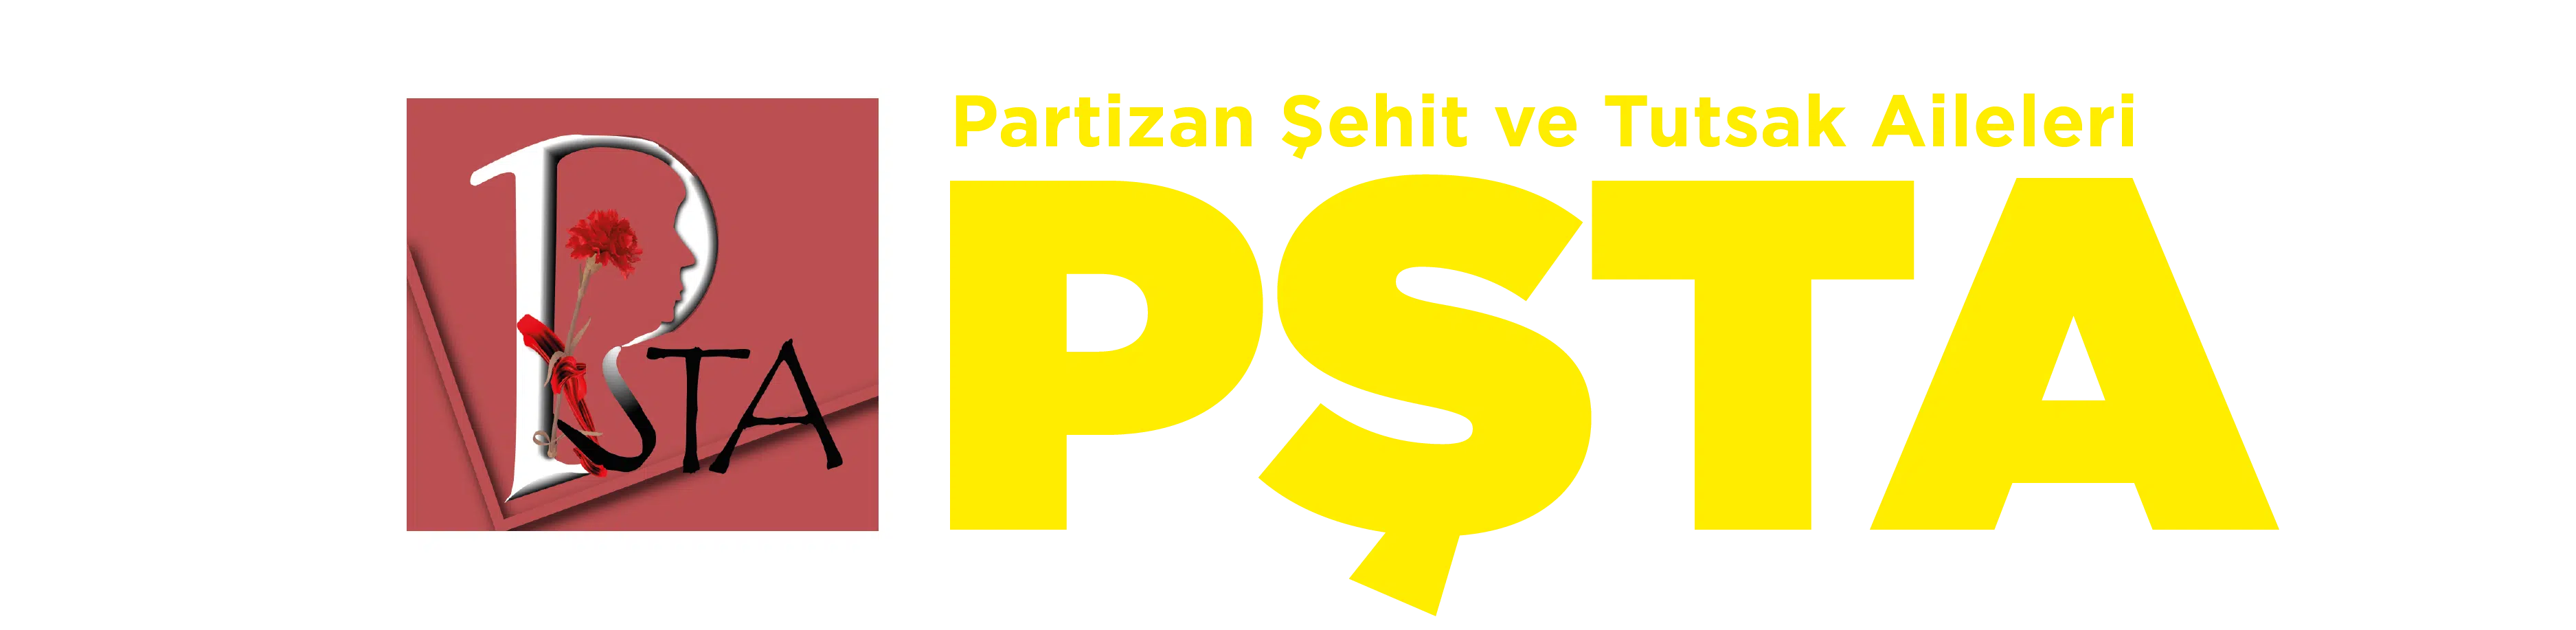 Partizan Şehit ve Tutsak Aileleri